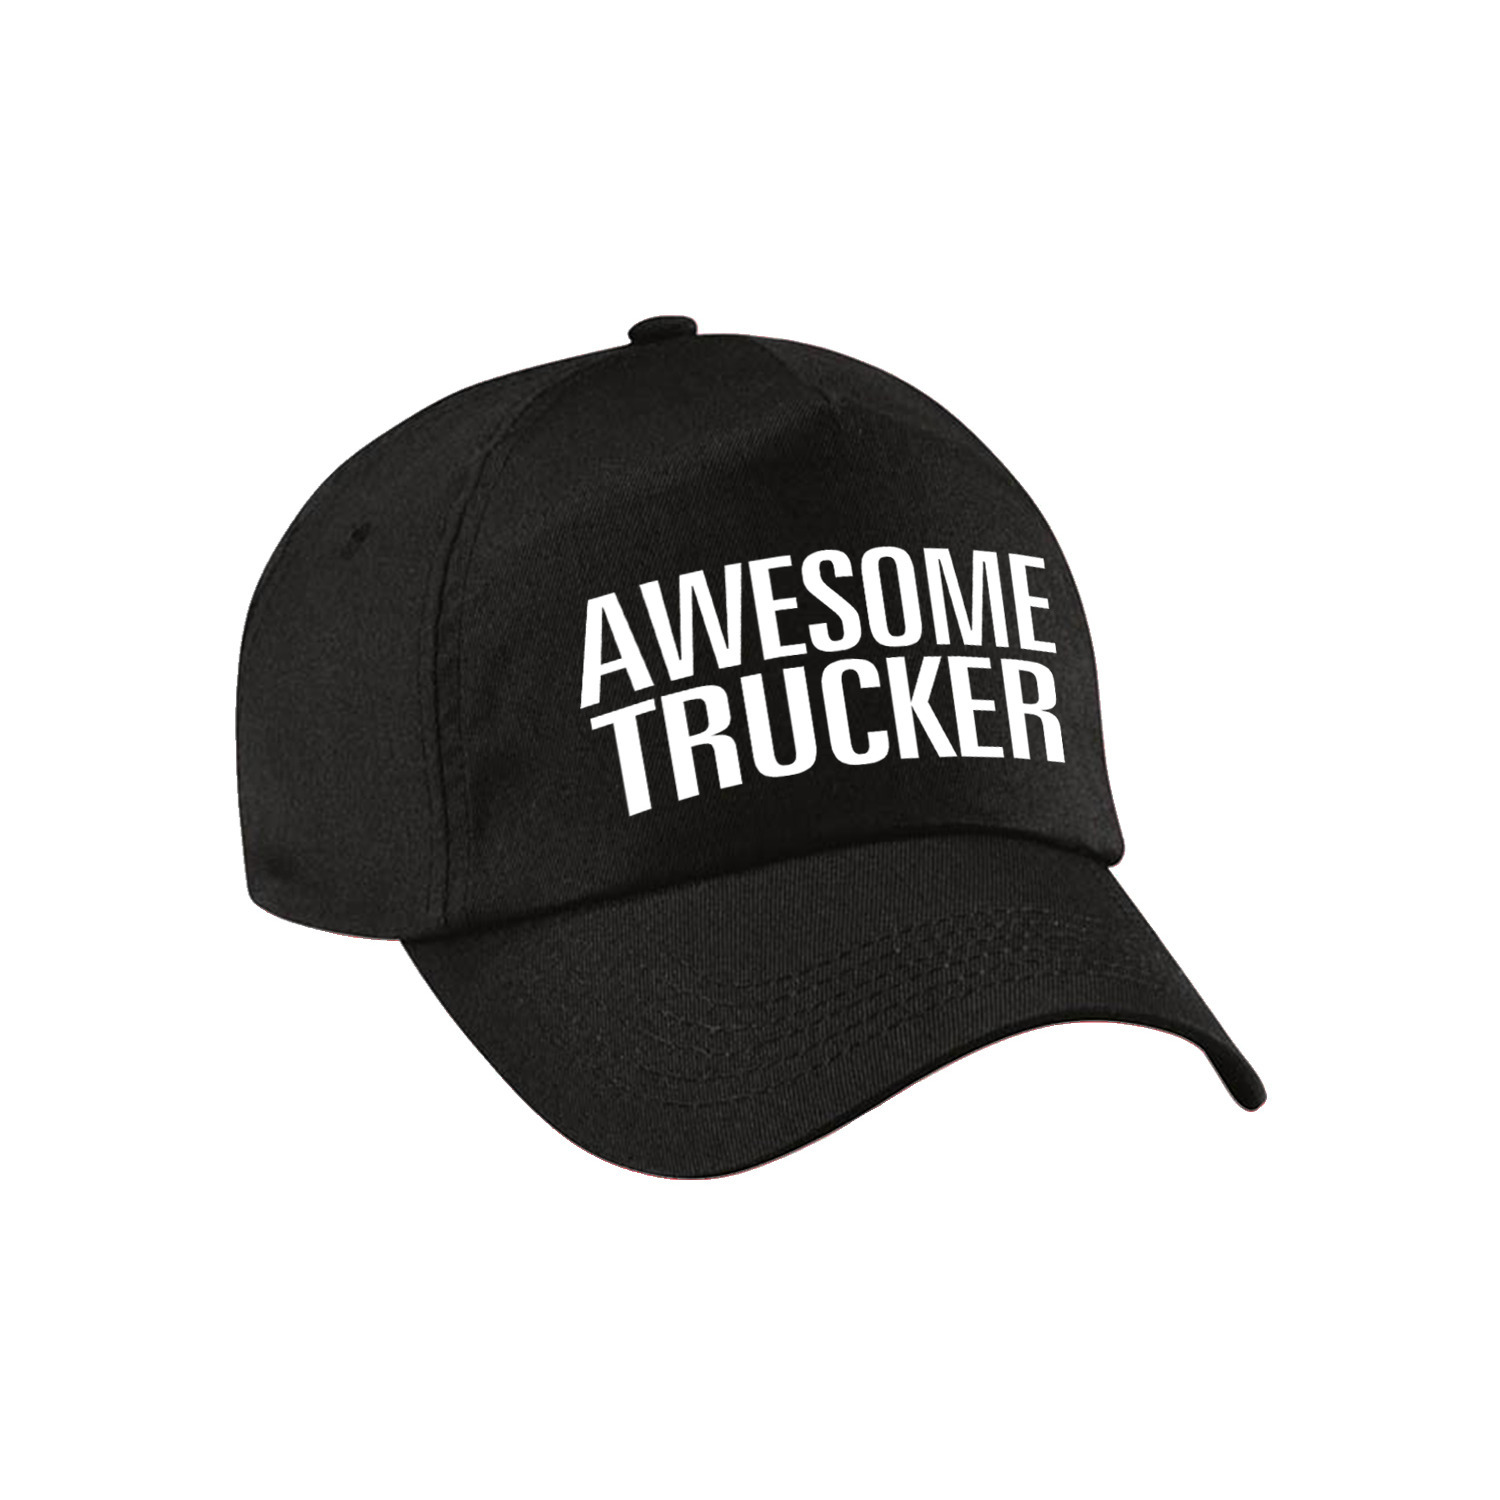 Awesome trucker pet - cap zwart voor volwassenen - Geweldige vrachtwagenchauffeur cadeau